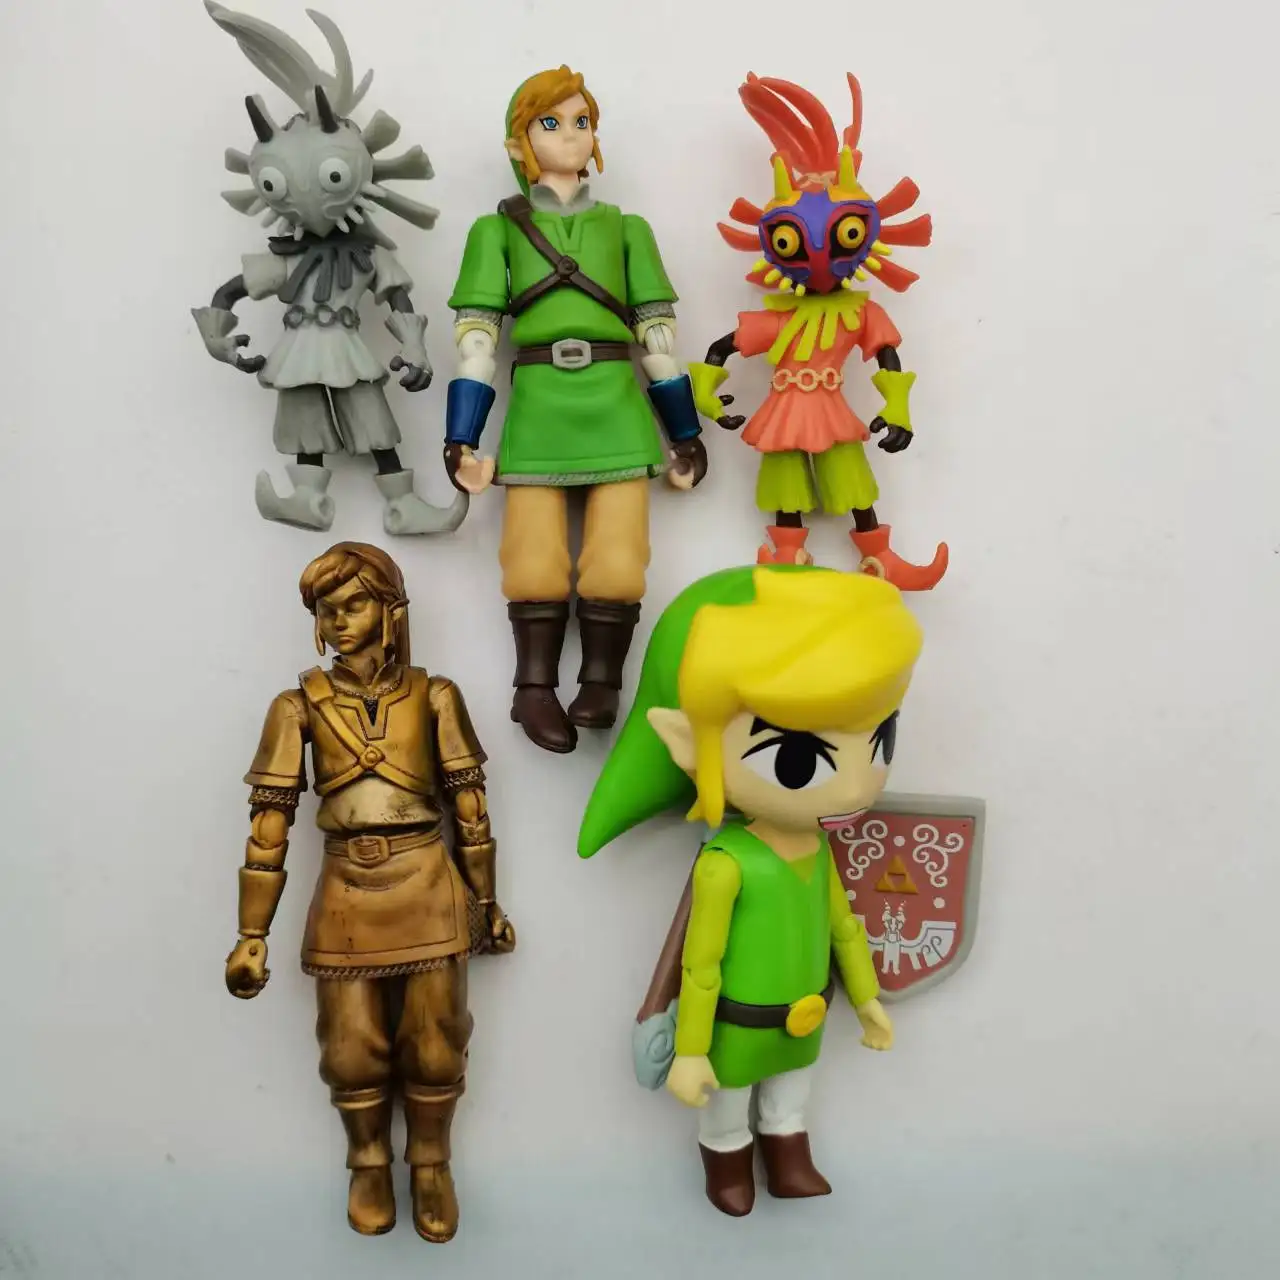 World of Nintendo Link Trophy Series Legend of Zelda Action Figure